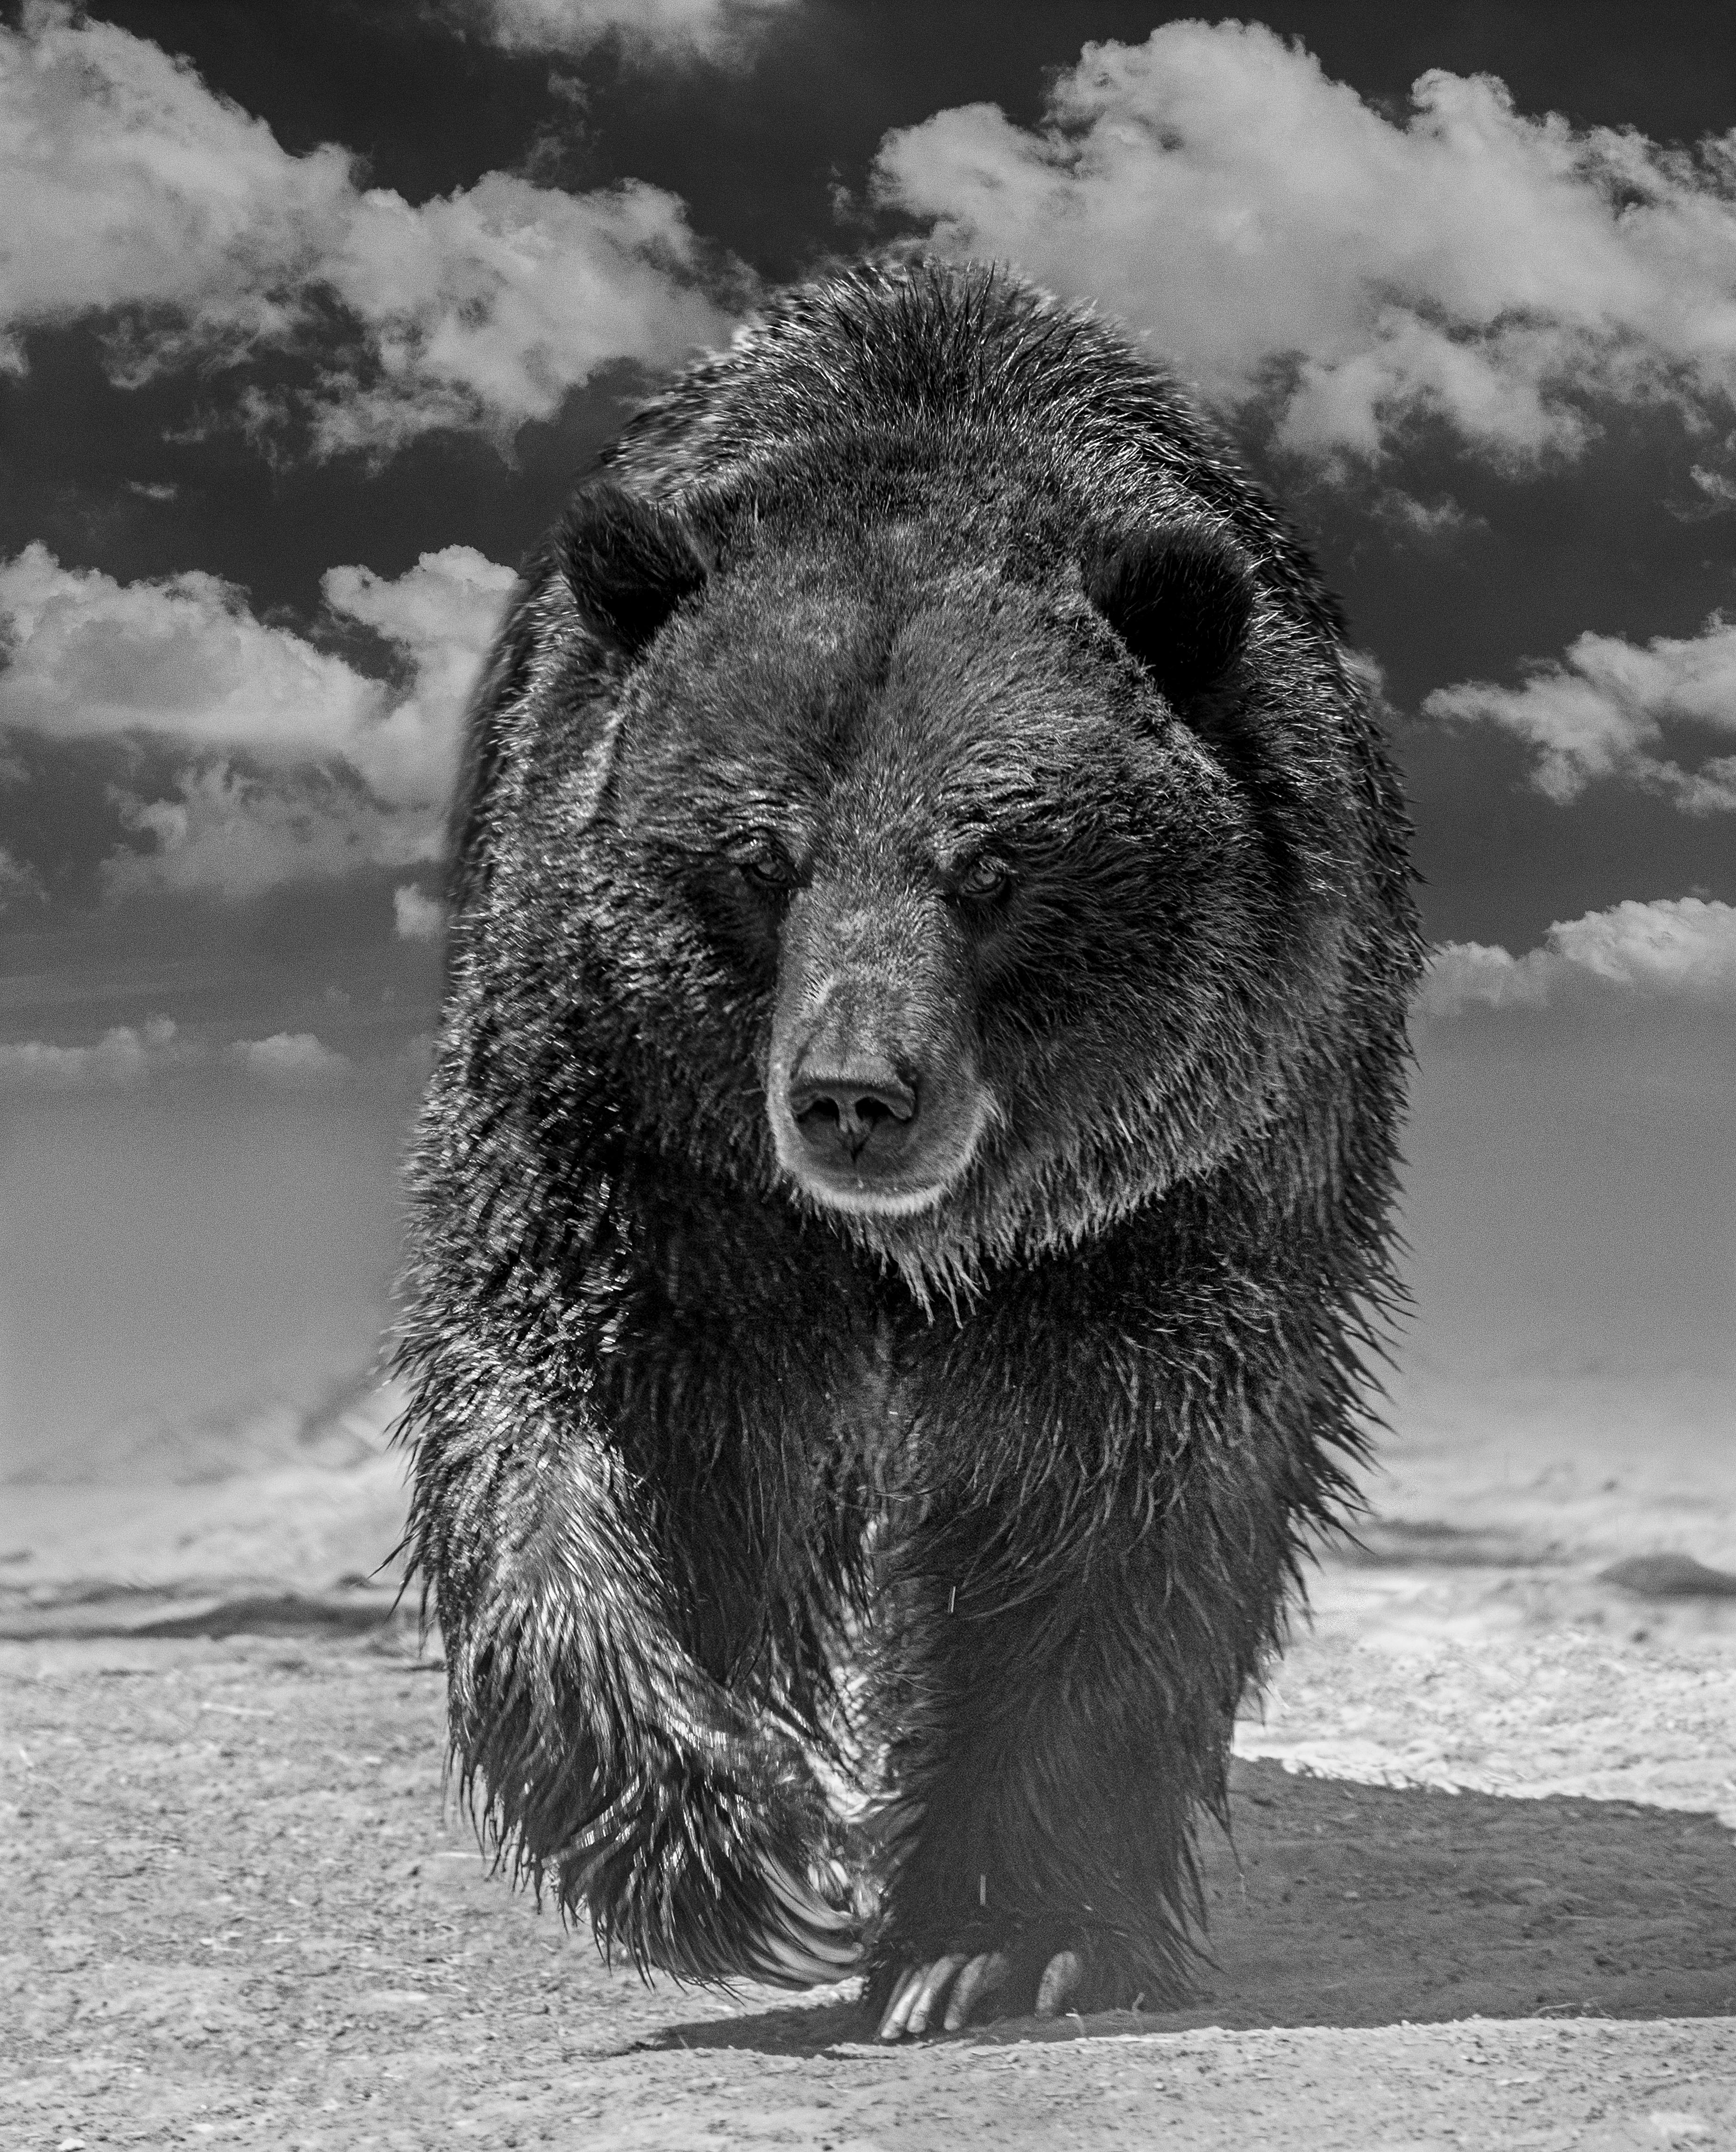 Black and White Photograph Shane Russeck - Grizzly Shores 40 x 28 - Photographie d'ours gris en noir et blanc